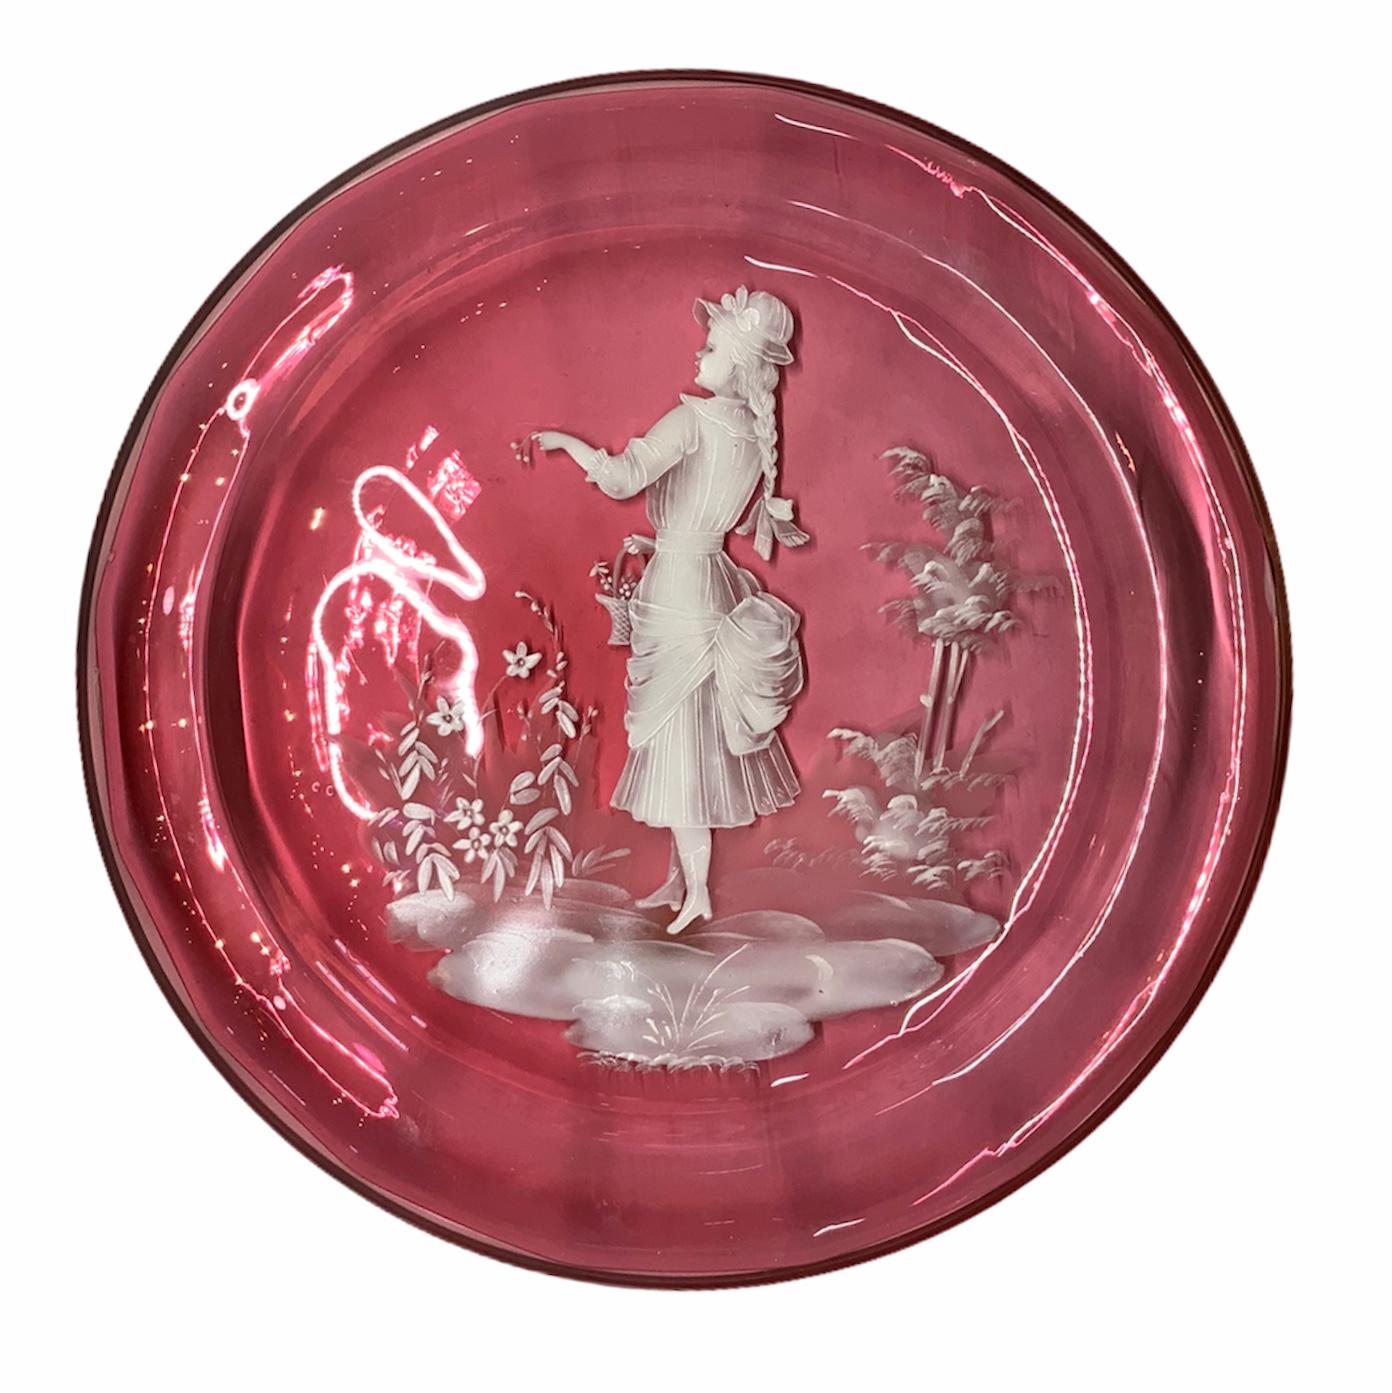 Il s'agit d'une assiette en verre émaillé blanc de Mary Gregory de couleur canneberge claire représentant une scène d'une élégante jeune fille de l'époque victorienne cueillant des fleurs dans un jardin et les mettant dans son panier.